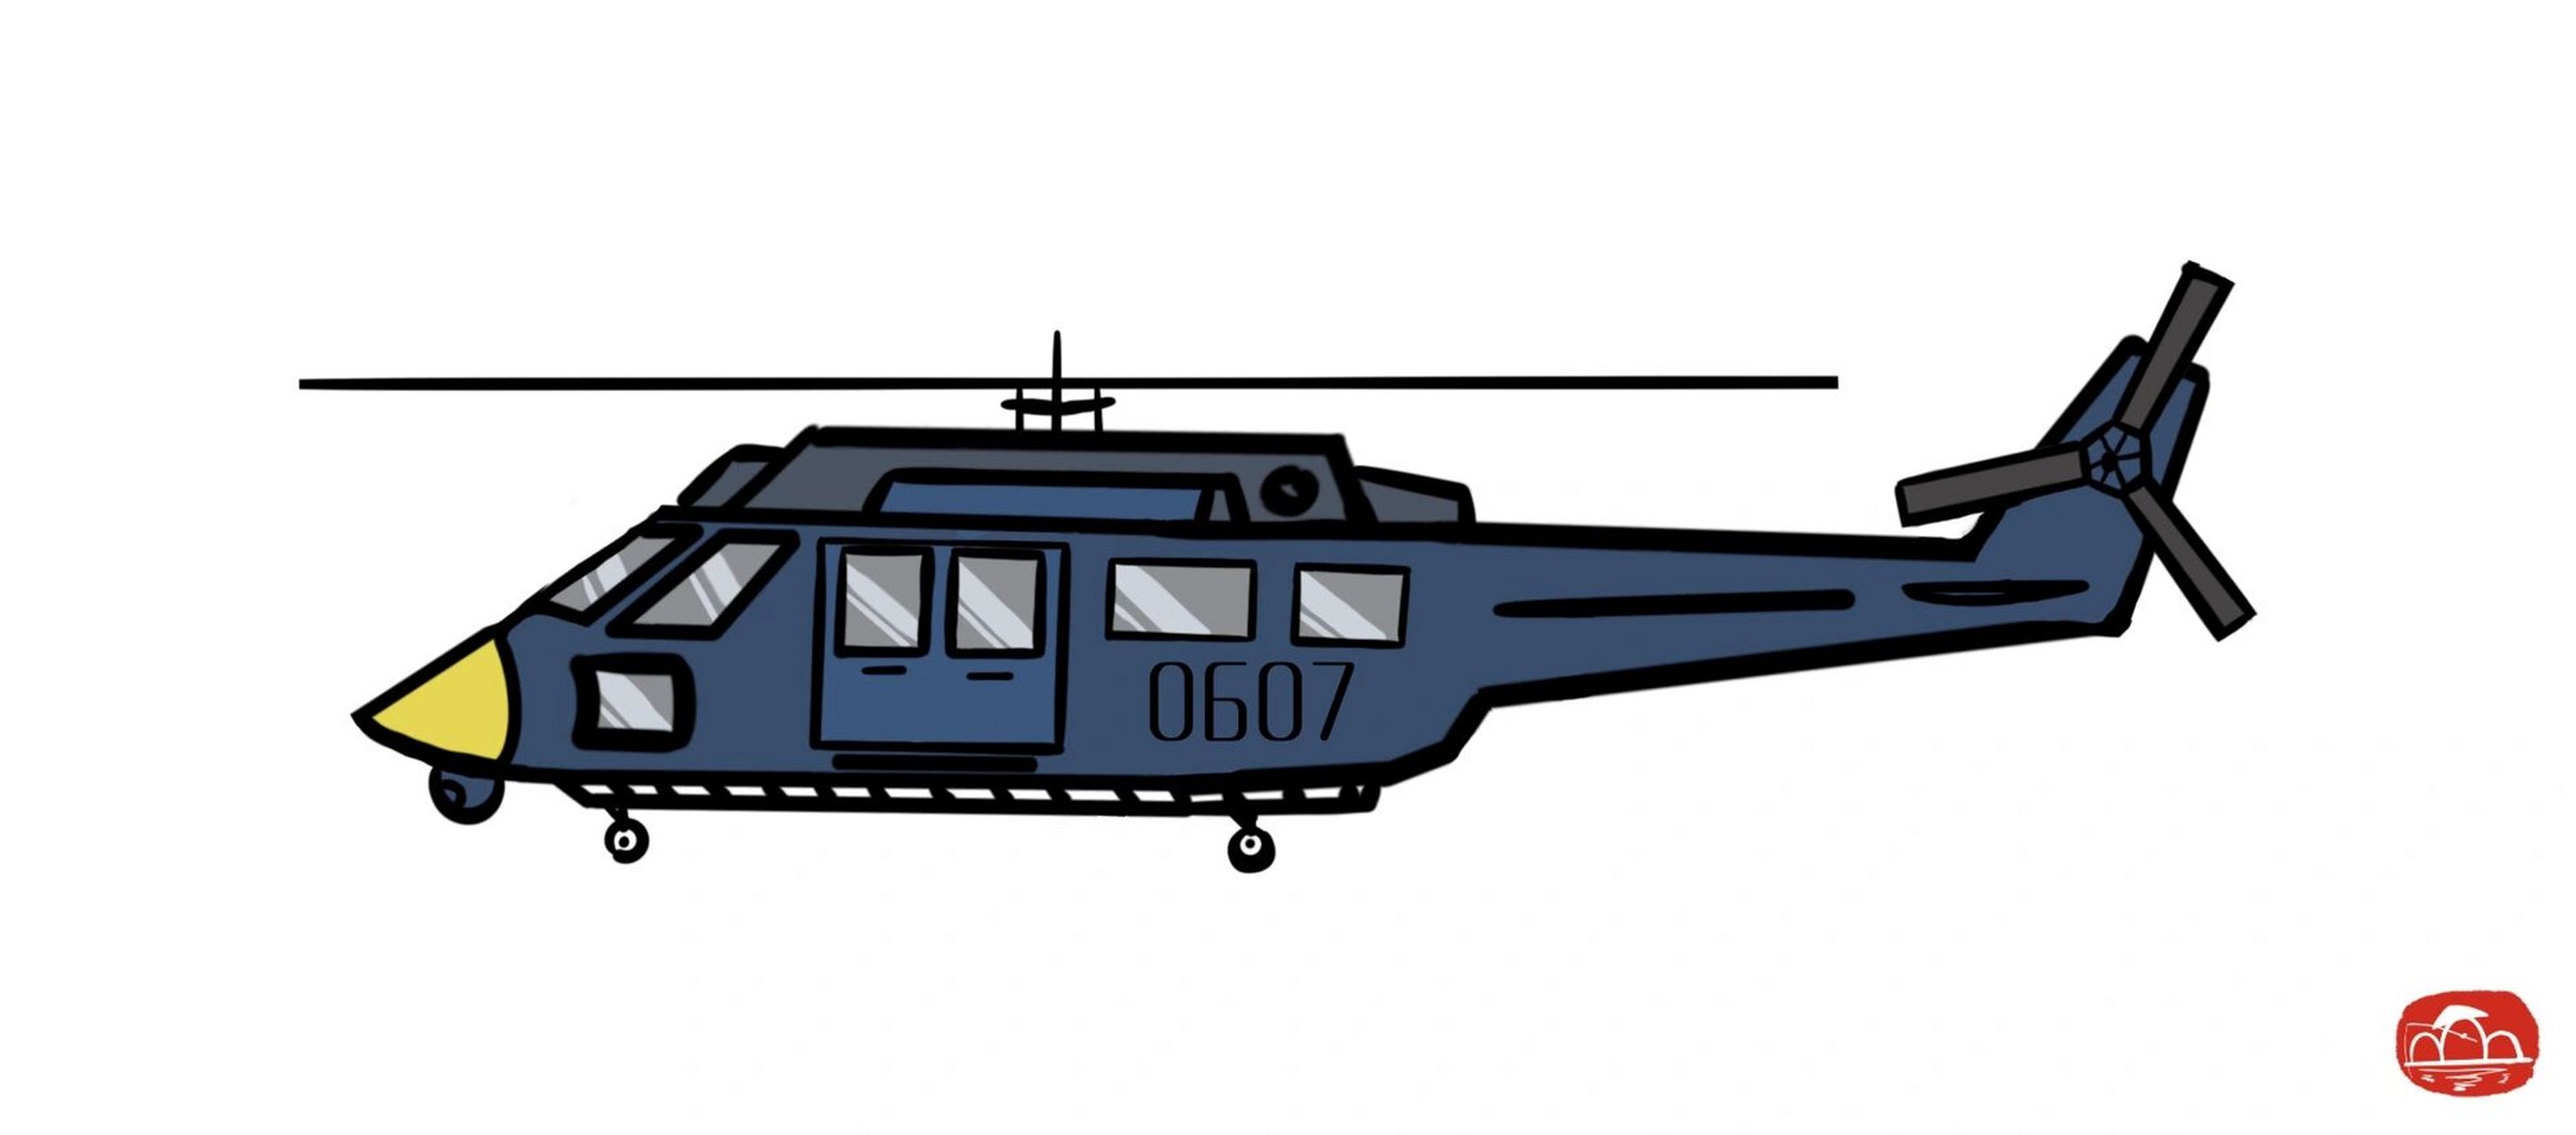 军用直升机简笔画画法图片